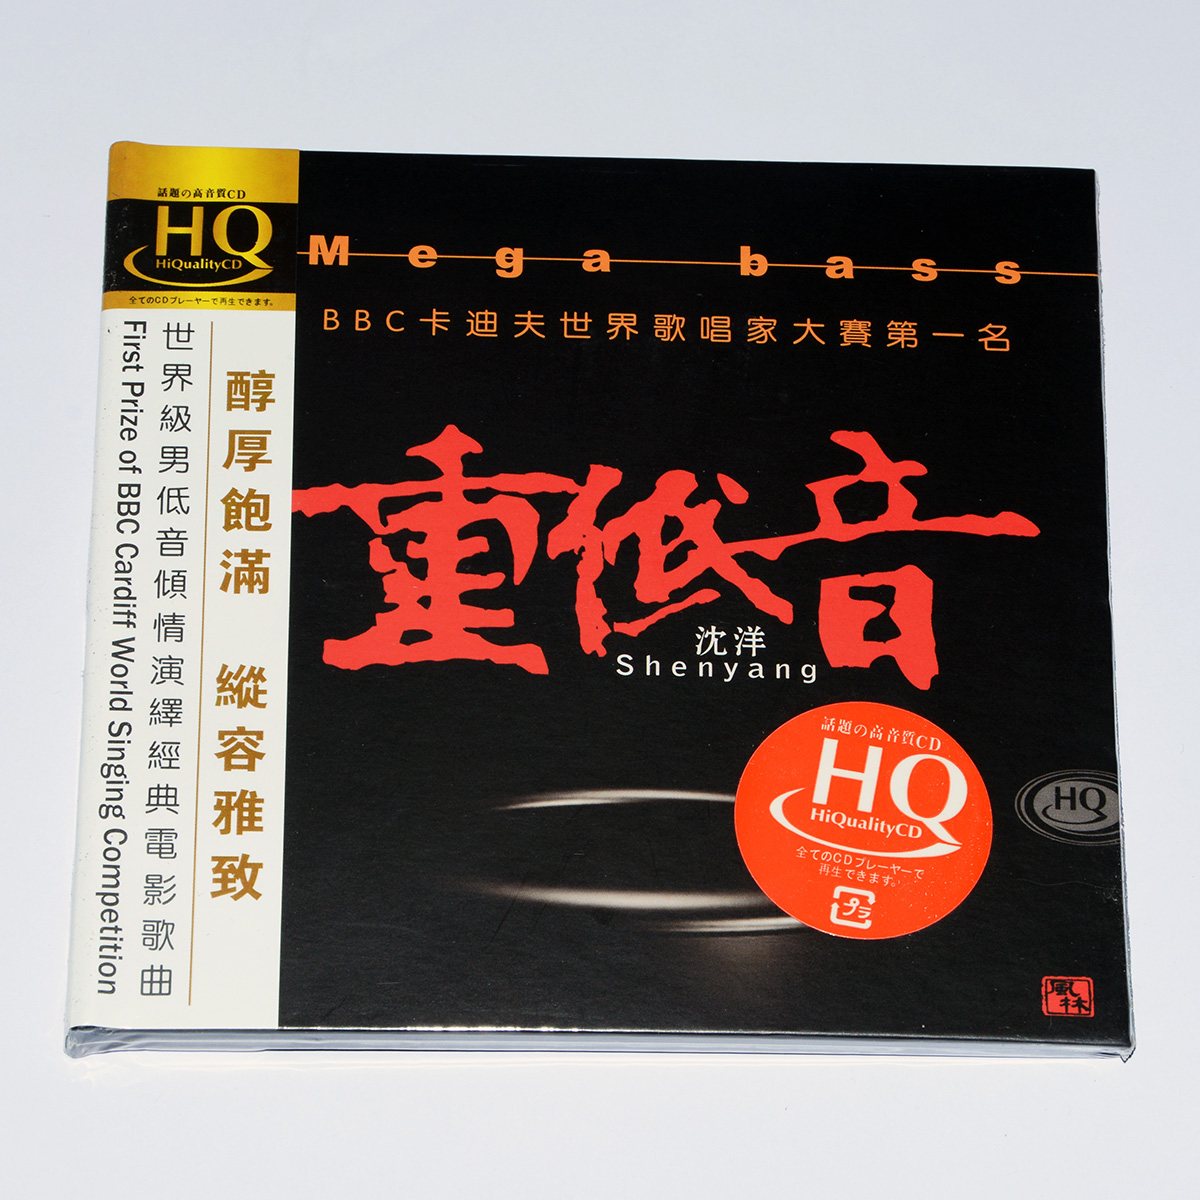 正版专辑发烧音乐CD碟片风林唱片男低音歌唱家 沈洋 重低音 HQCD